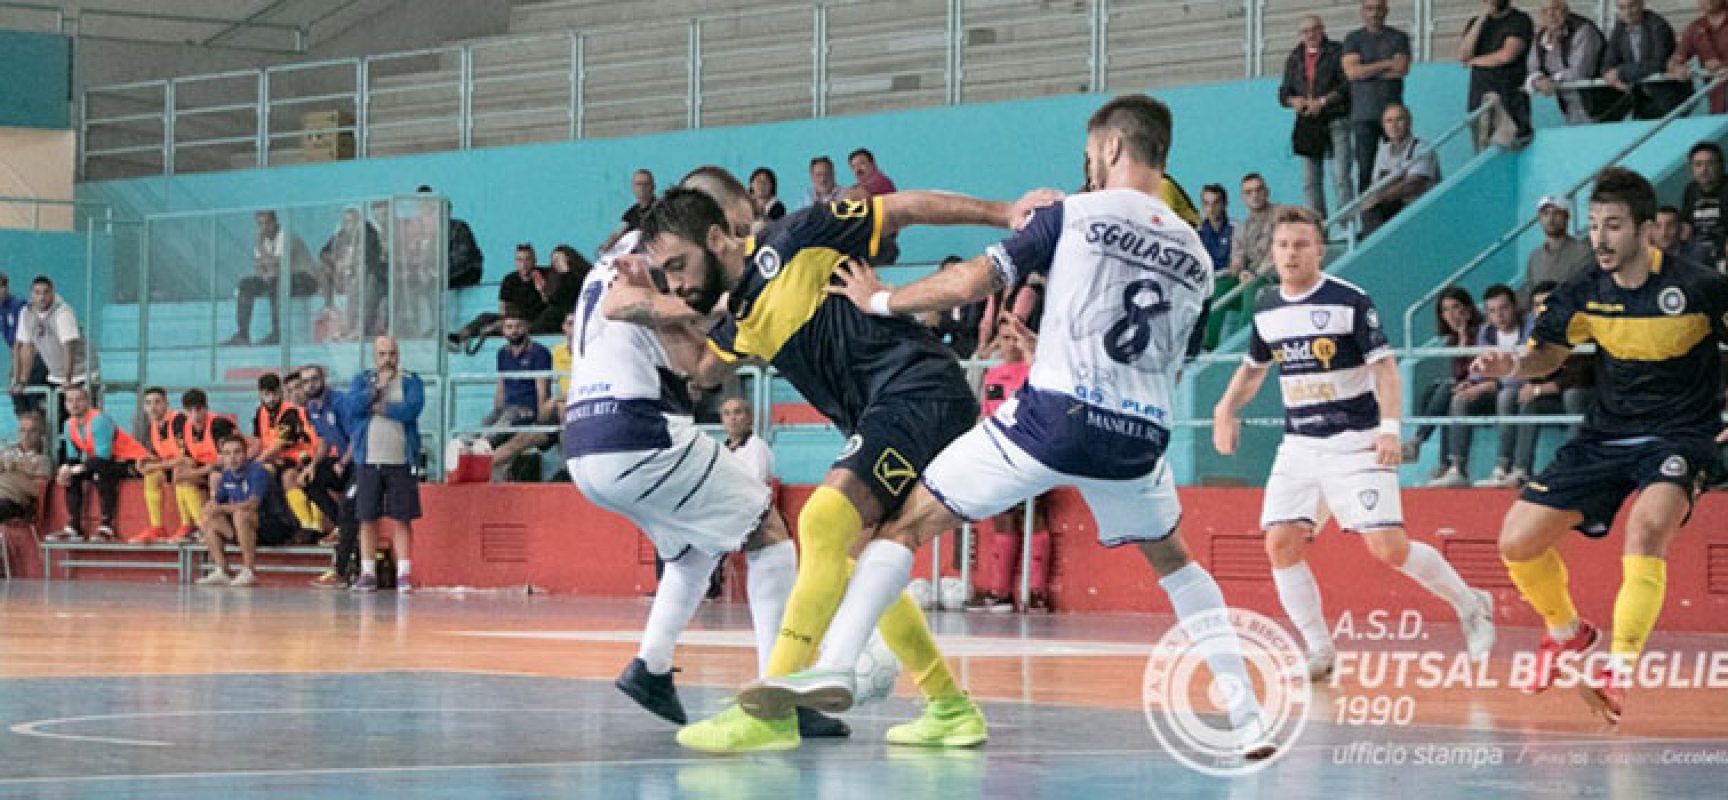 Il Futsal Bisceglie vuole rialzarsi, al PalaDolmen arriva la Tenax